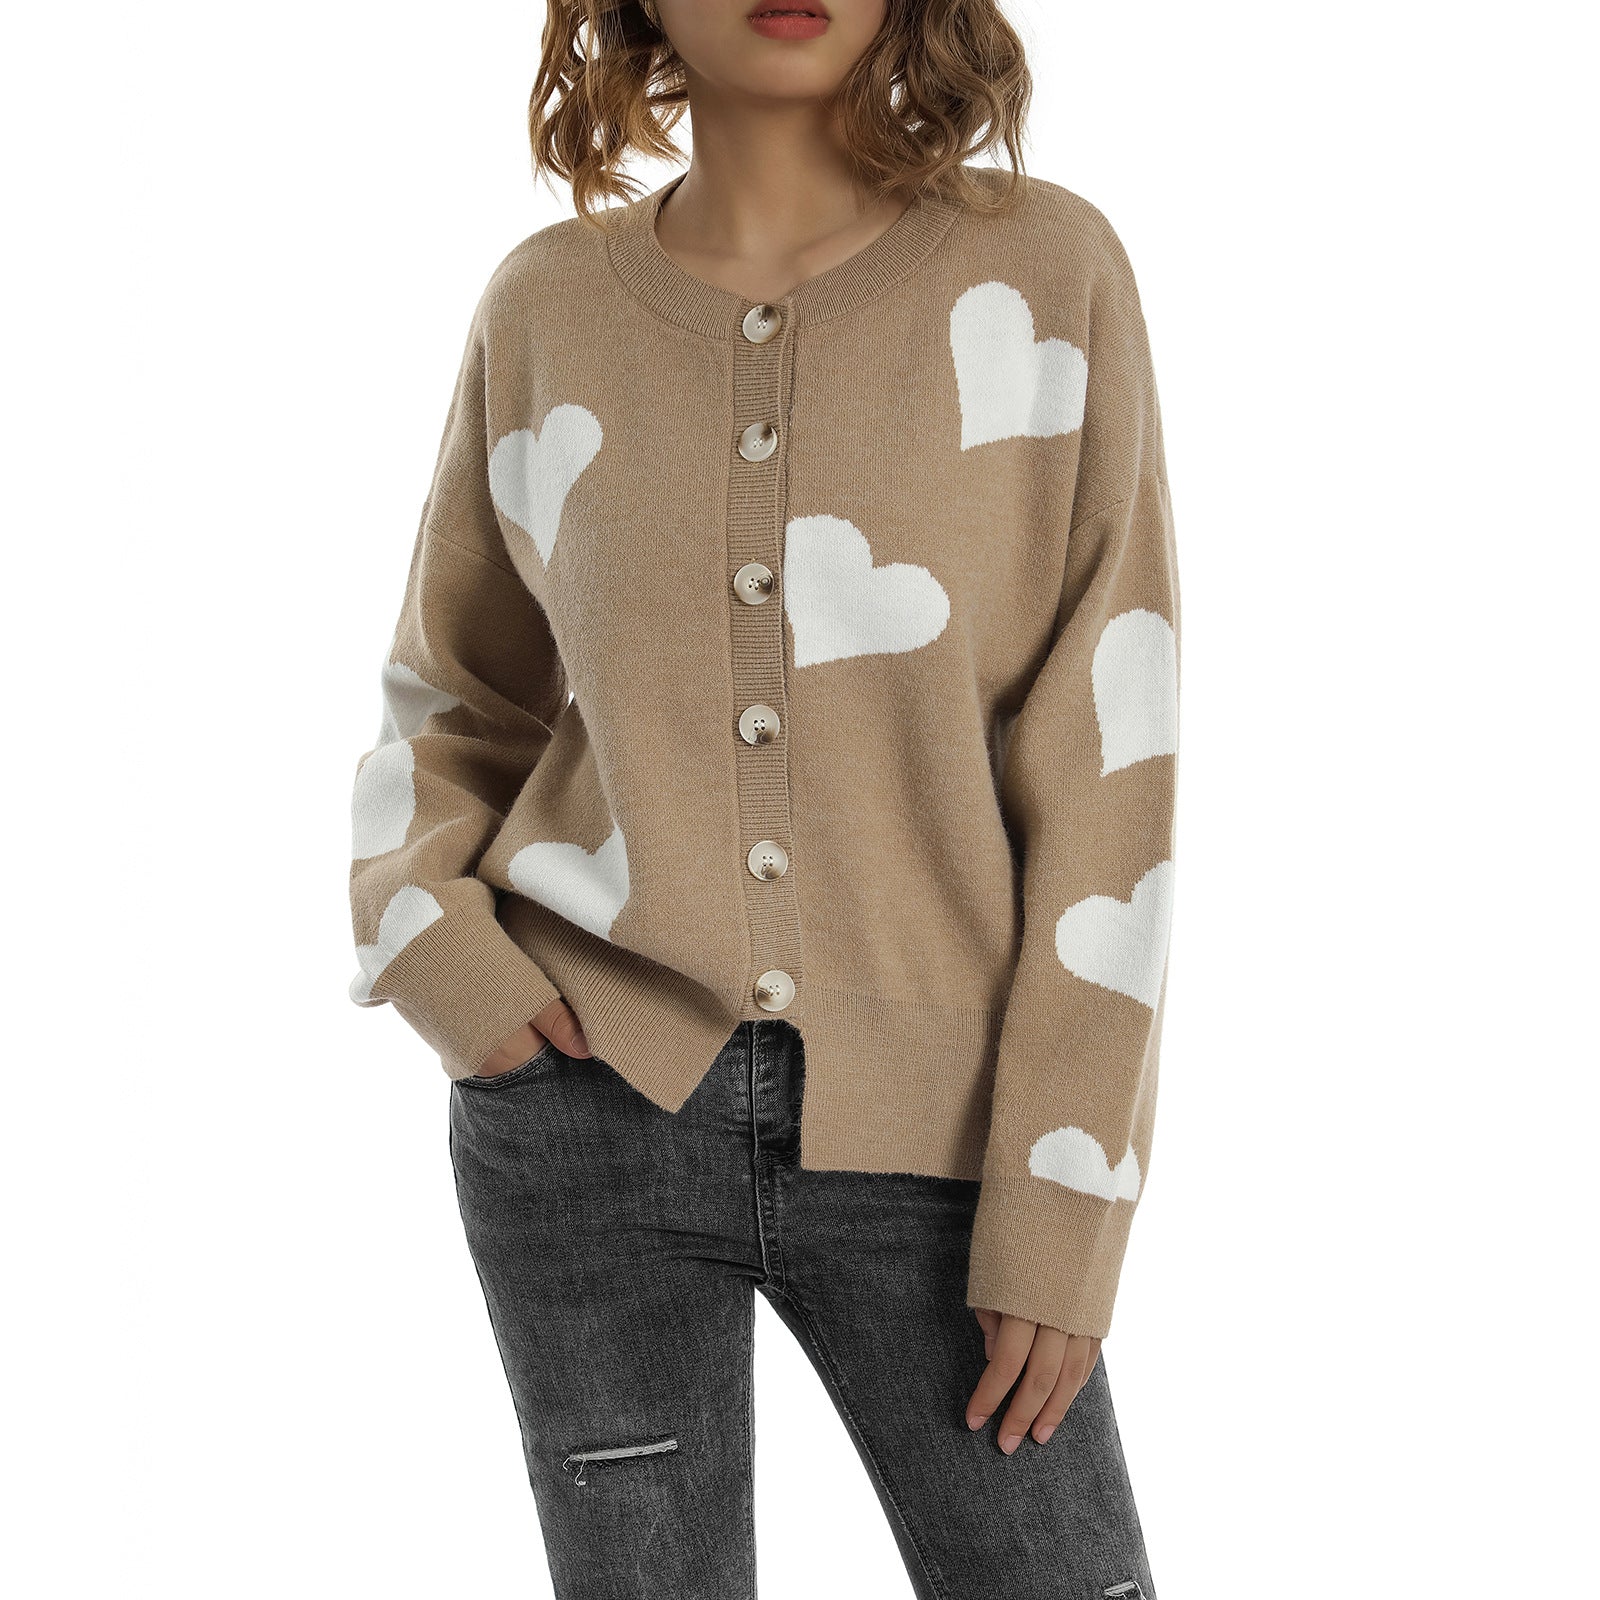 Heart Sweater Women's Cardigan